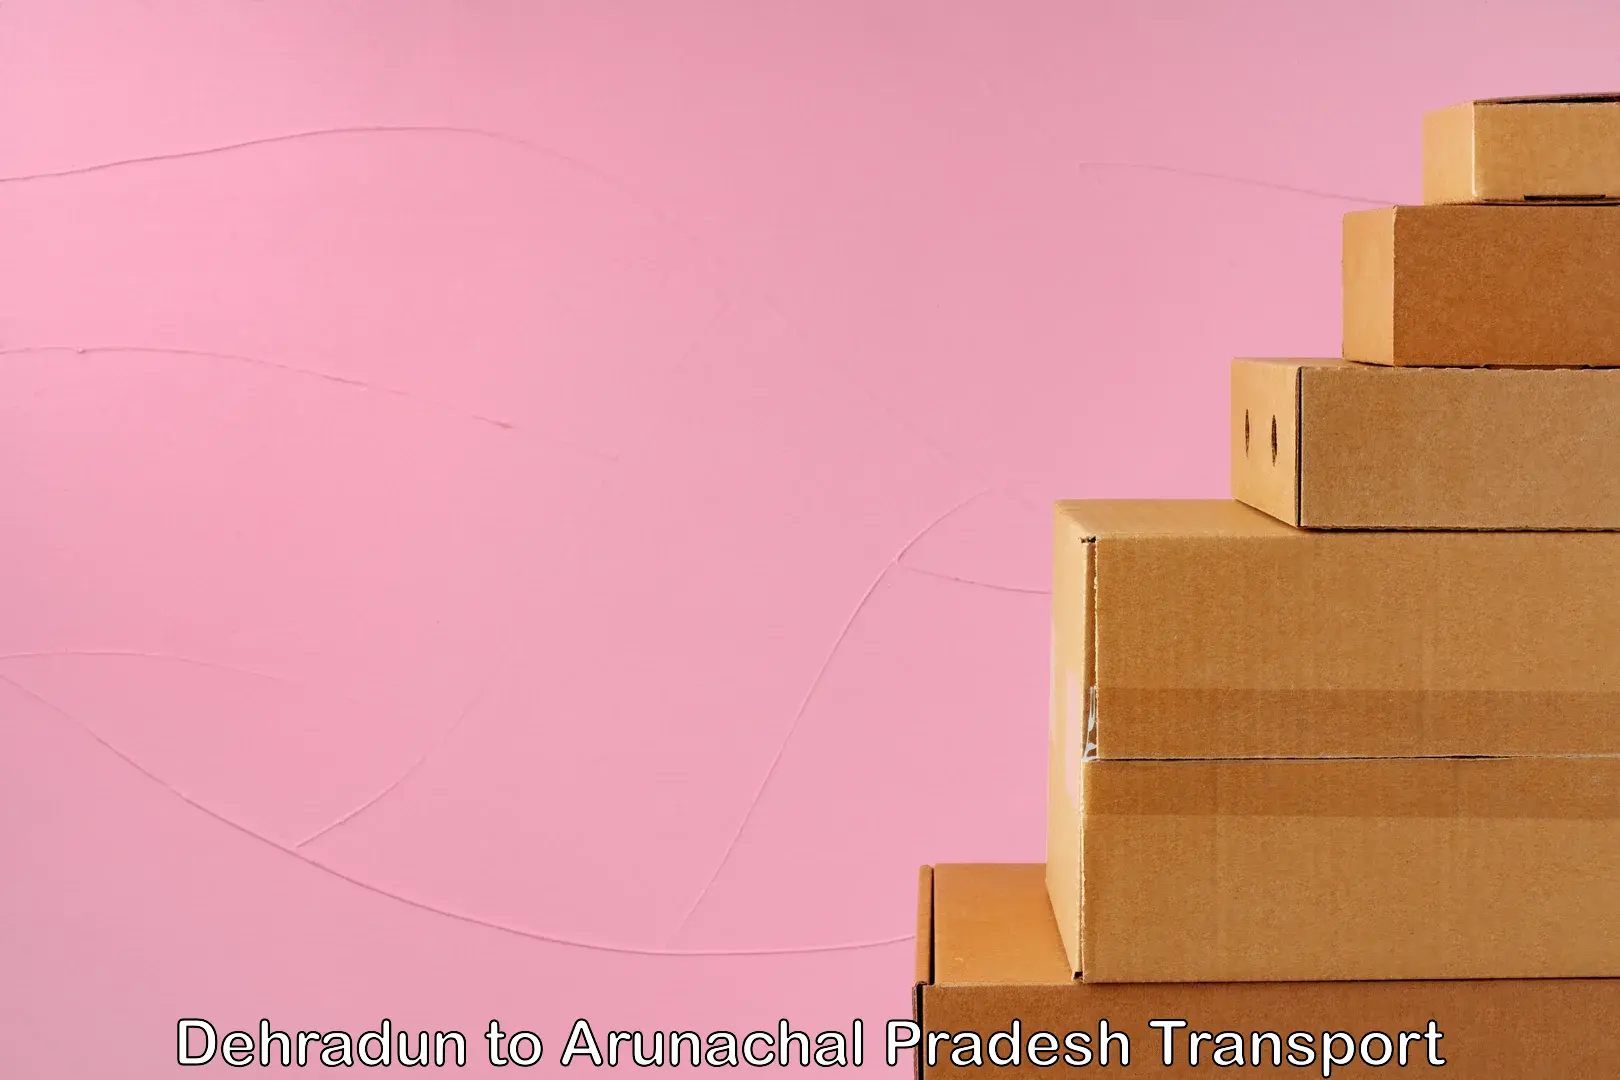 Furniture transport service in Dehradun to Arunachal Pradesh